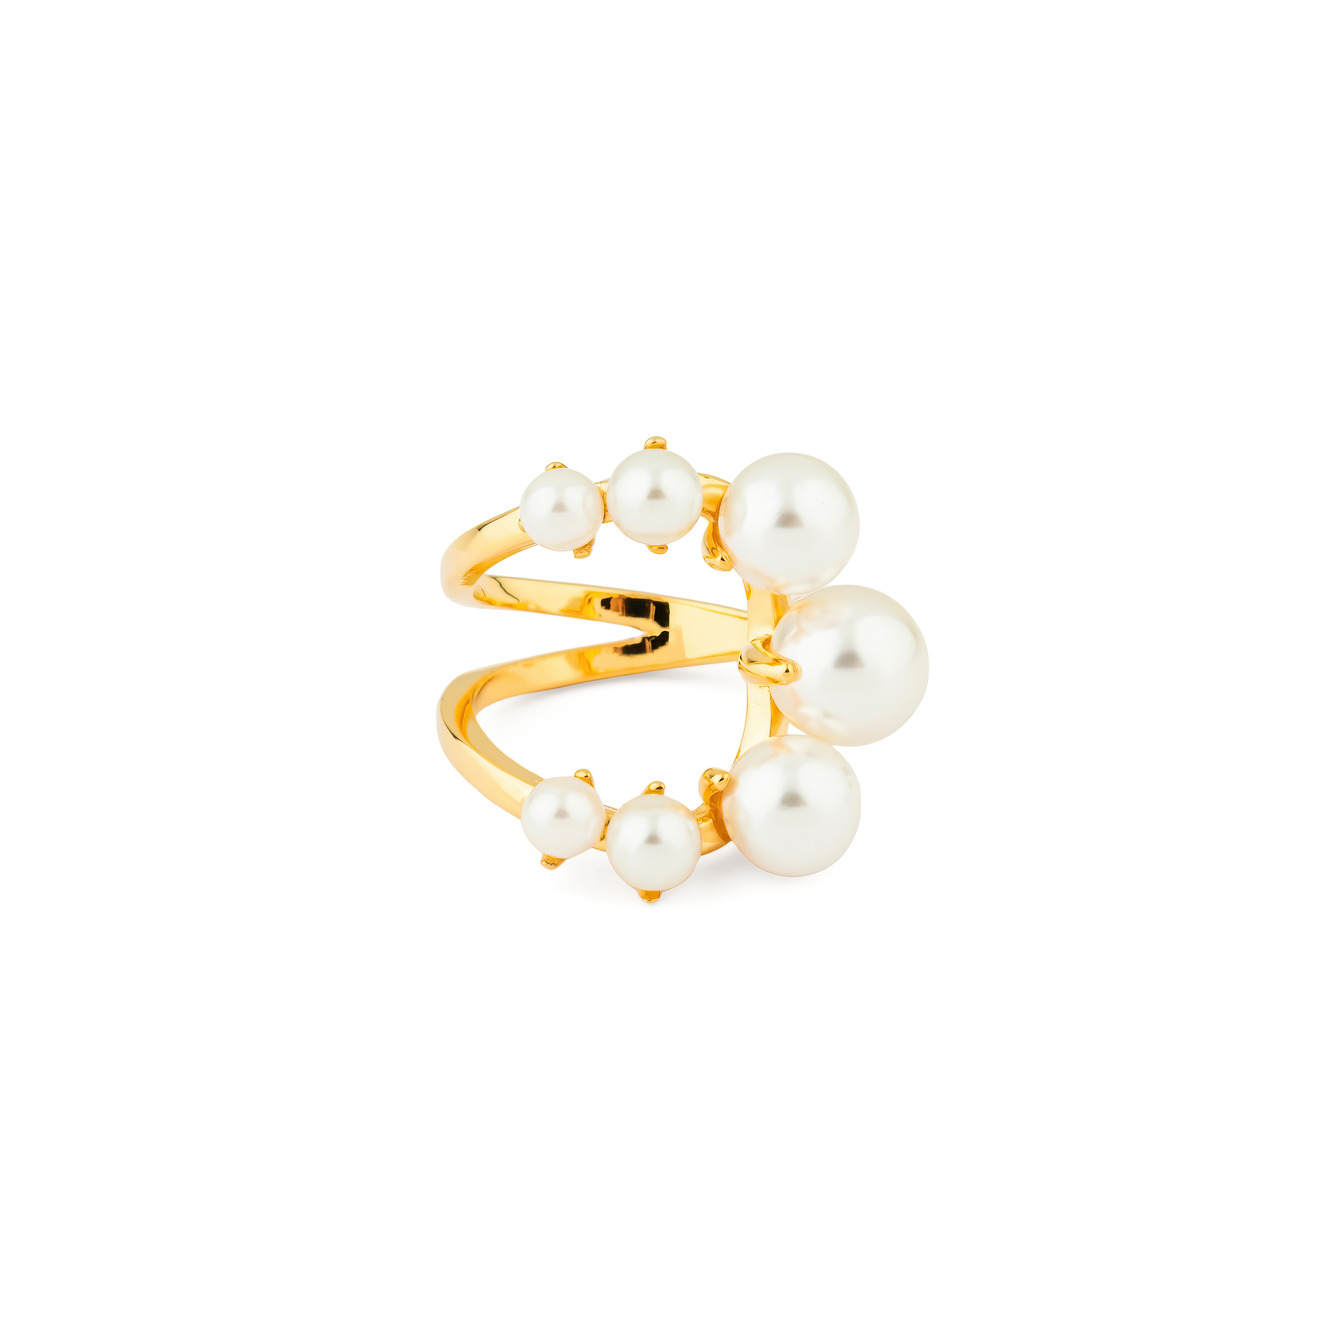 Aqua Золотистое открытое кольцо с белыми бусинами aqua золотистое открытое кольцо с белыми бусинами